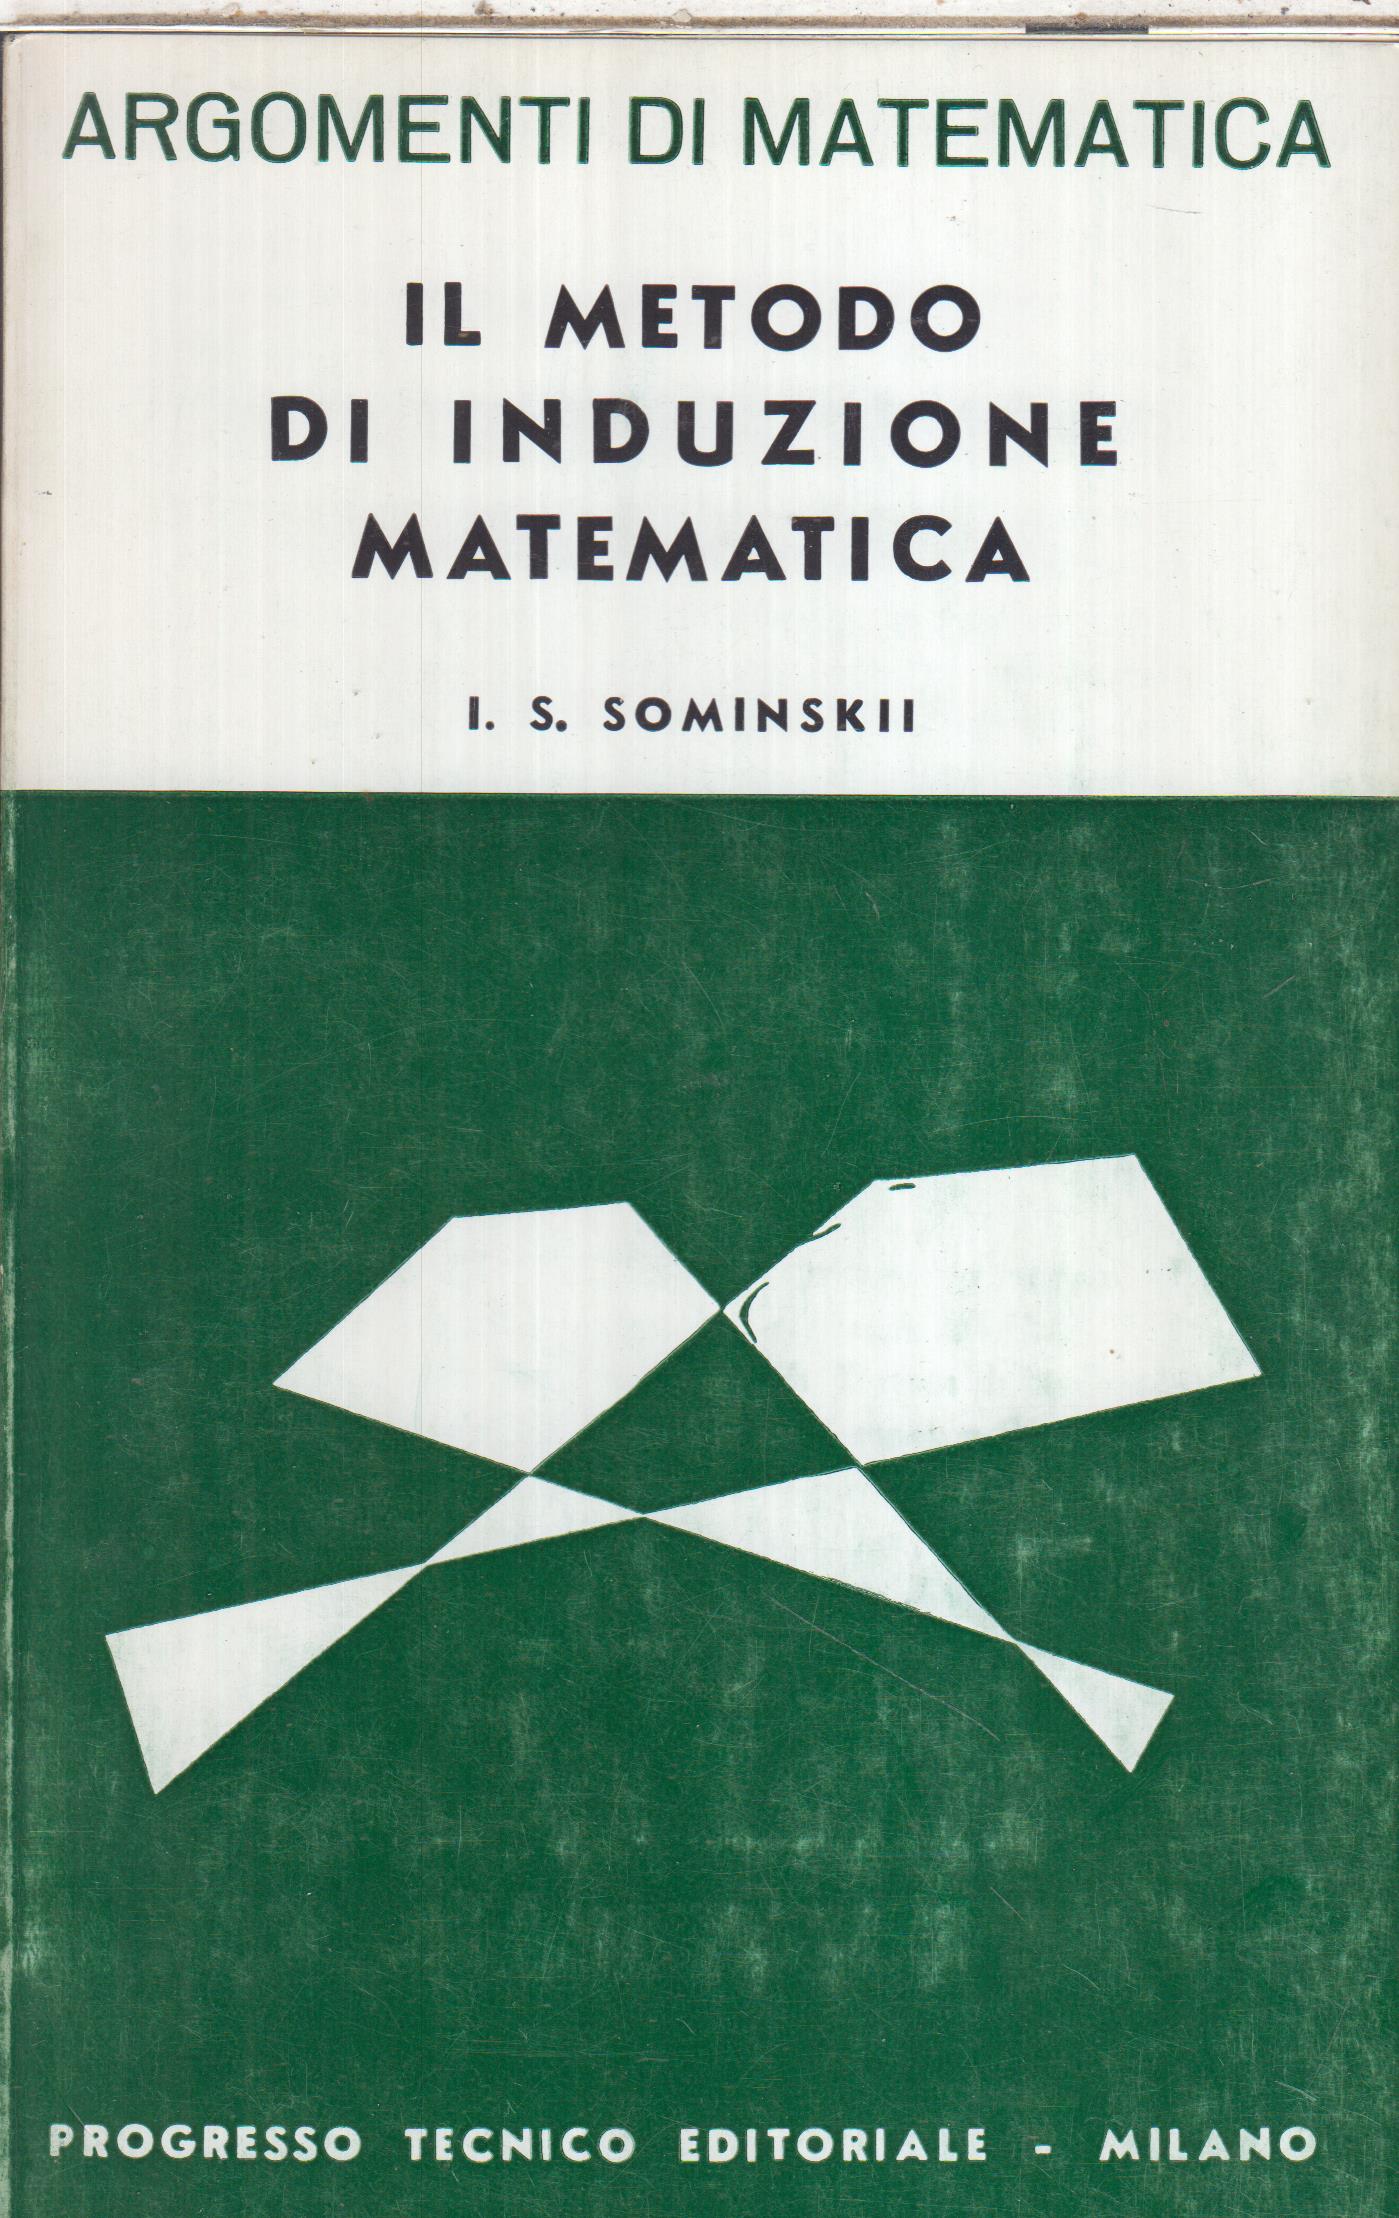 Il metodo di induzione matematica, I. S. Sominskii